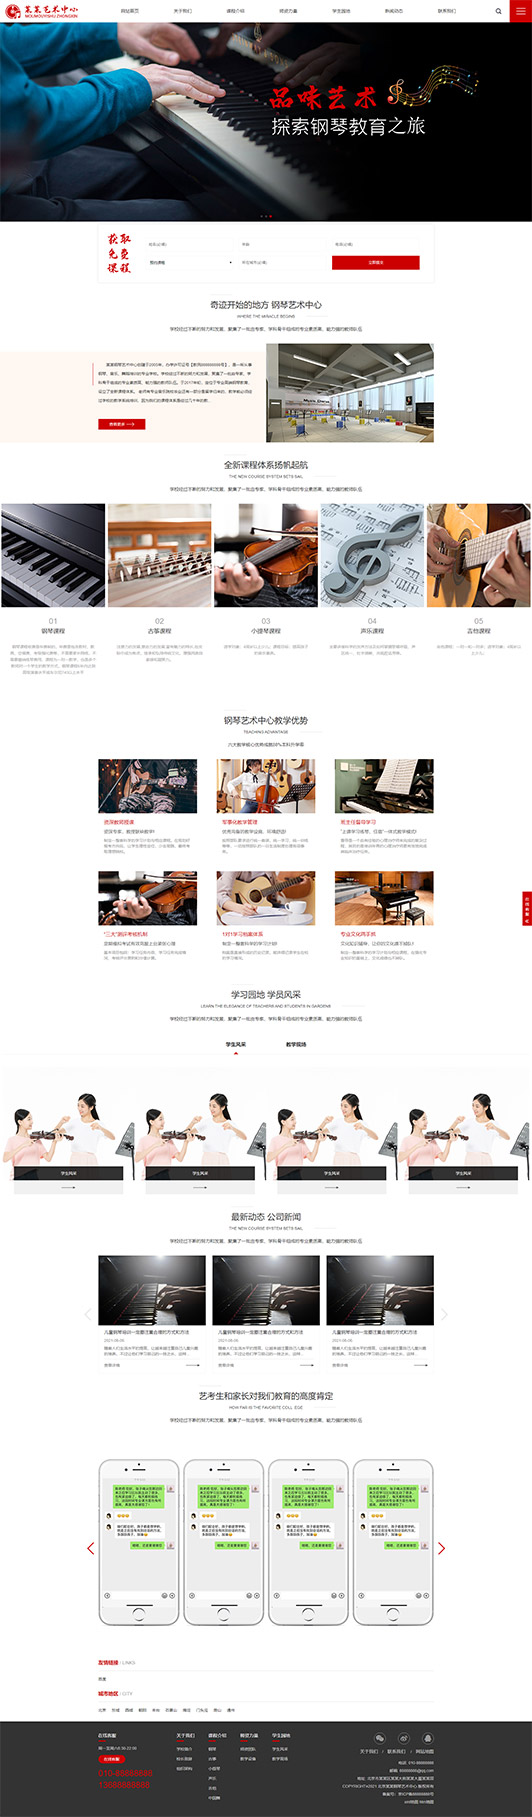 丹东钢琴艺术培训公司响应式企业网站